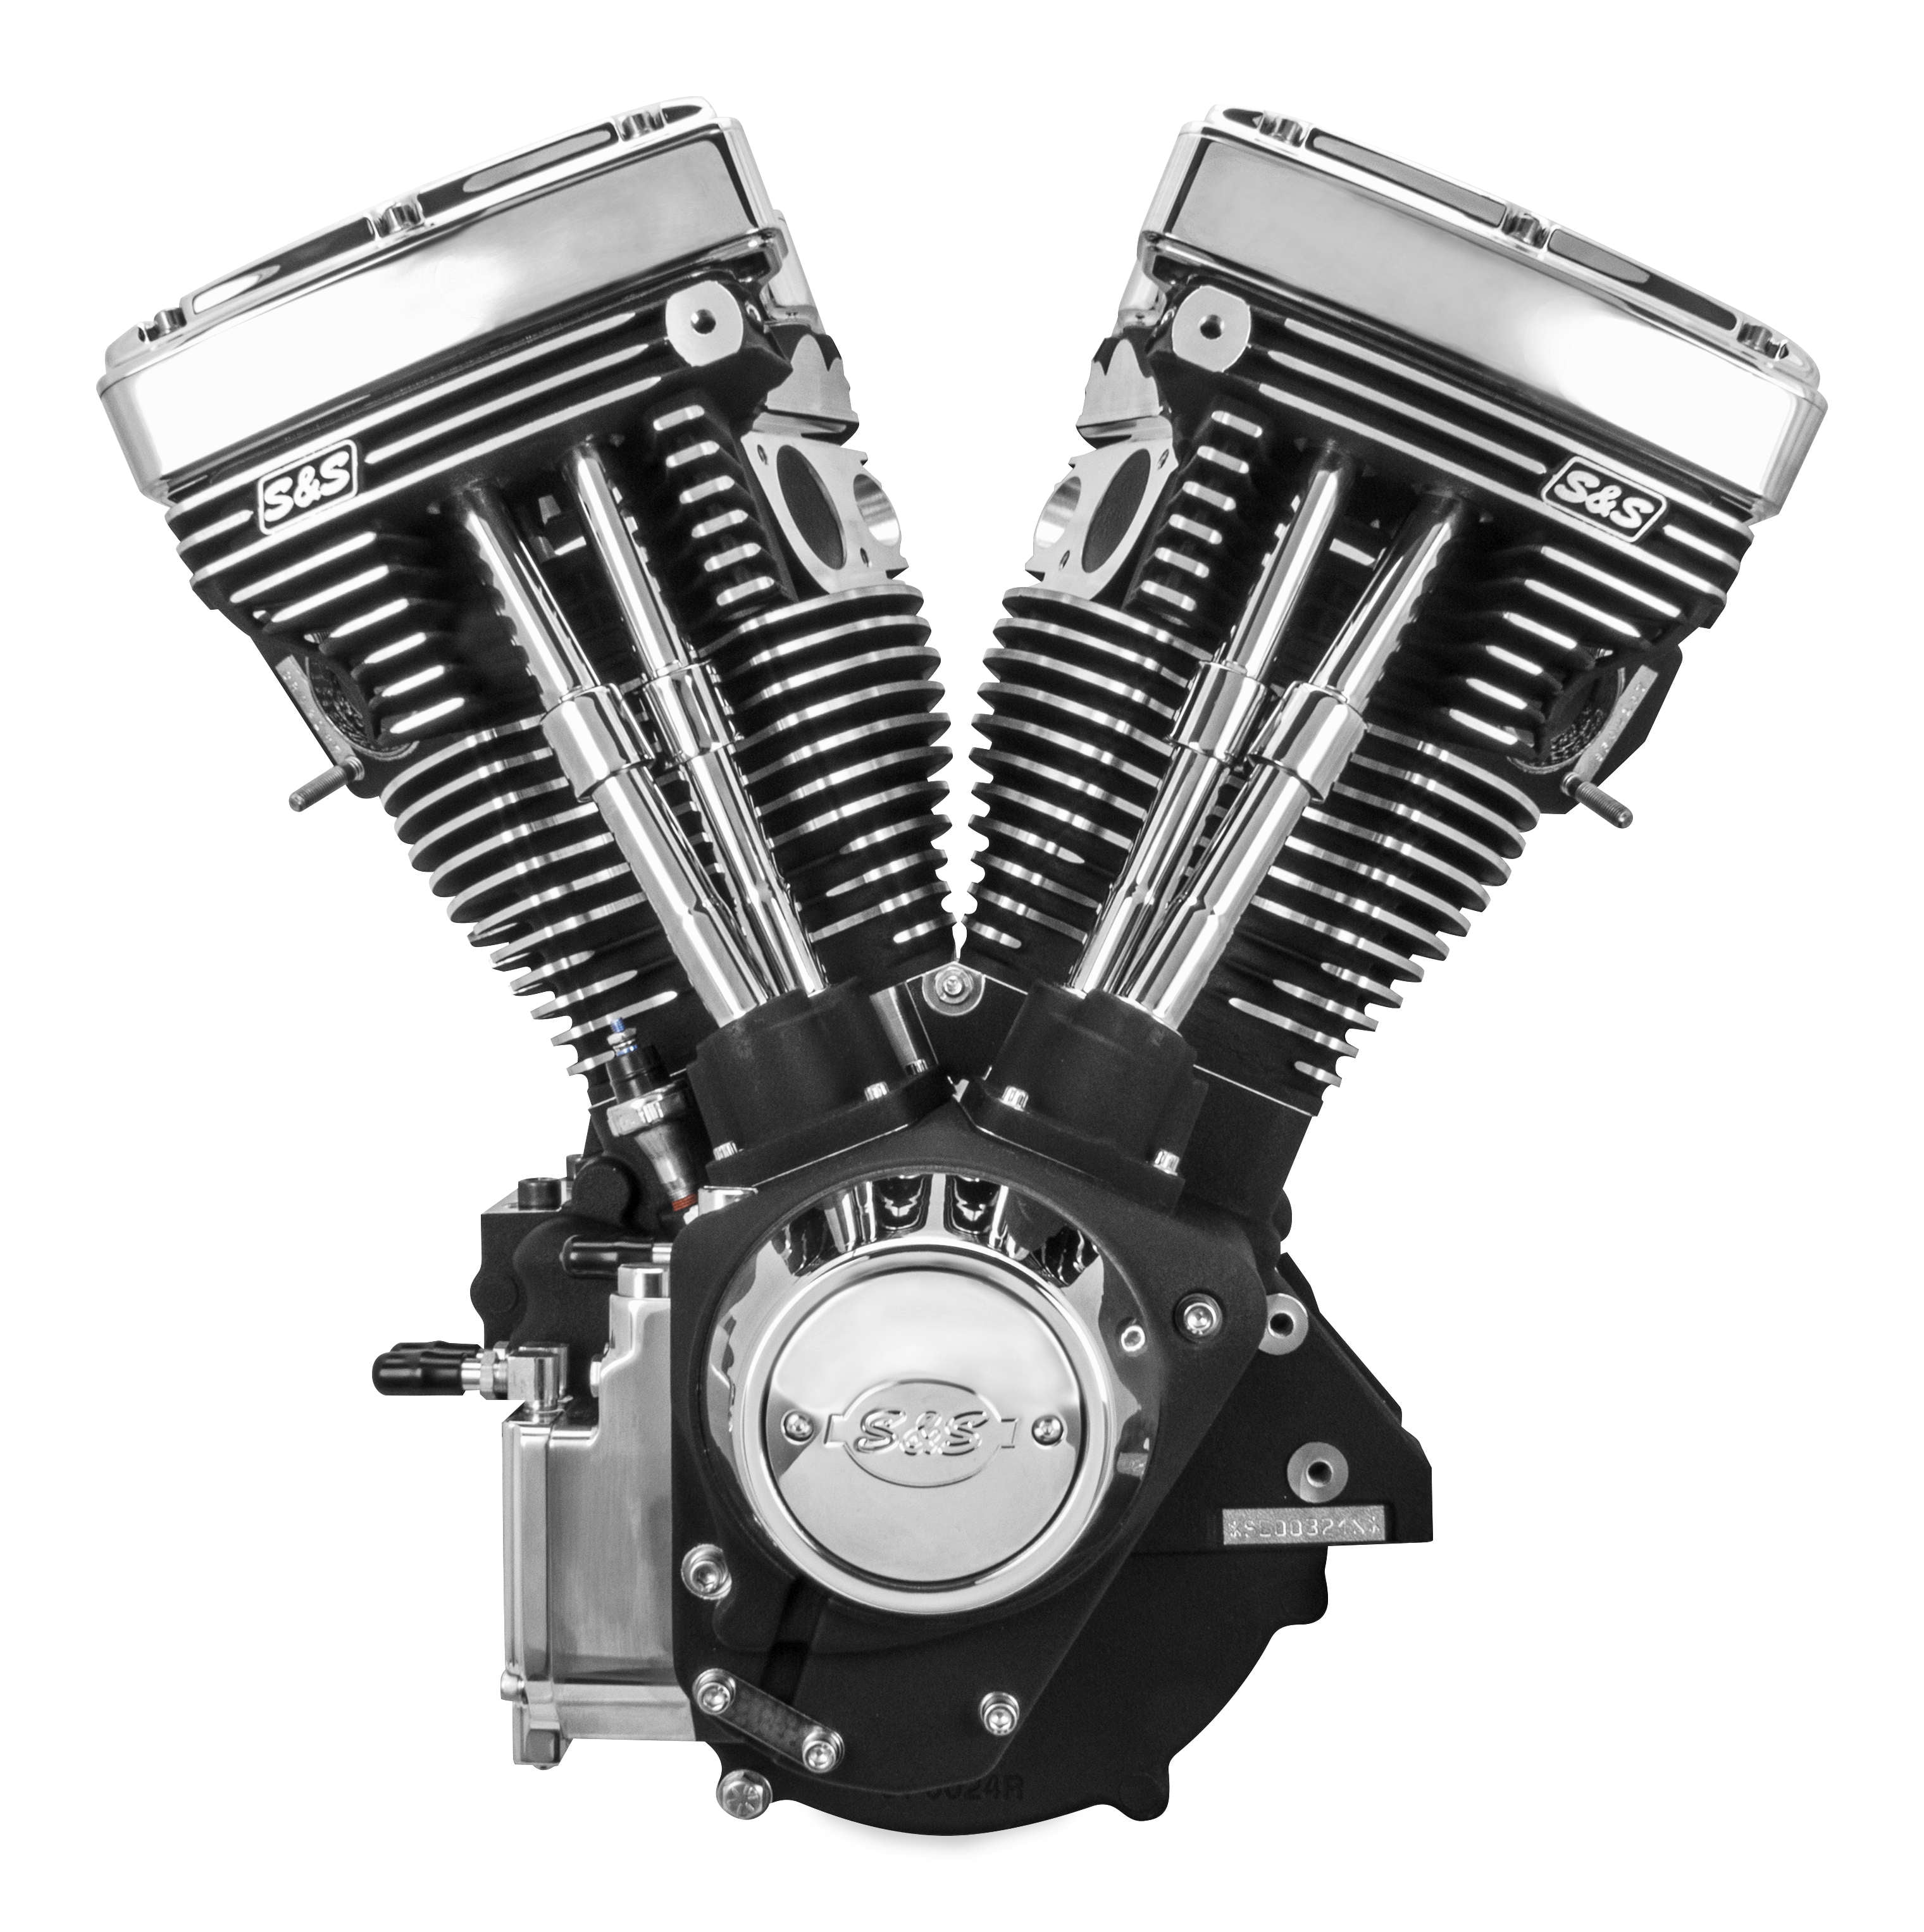 Мотор байка. Мотор Harley Davidson v2. Двигатель Харлей Дэвидсон Эволюшн. Мотор мотоцикла Харлей Дэвидсон. Харли девиксан двигатель.